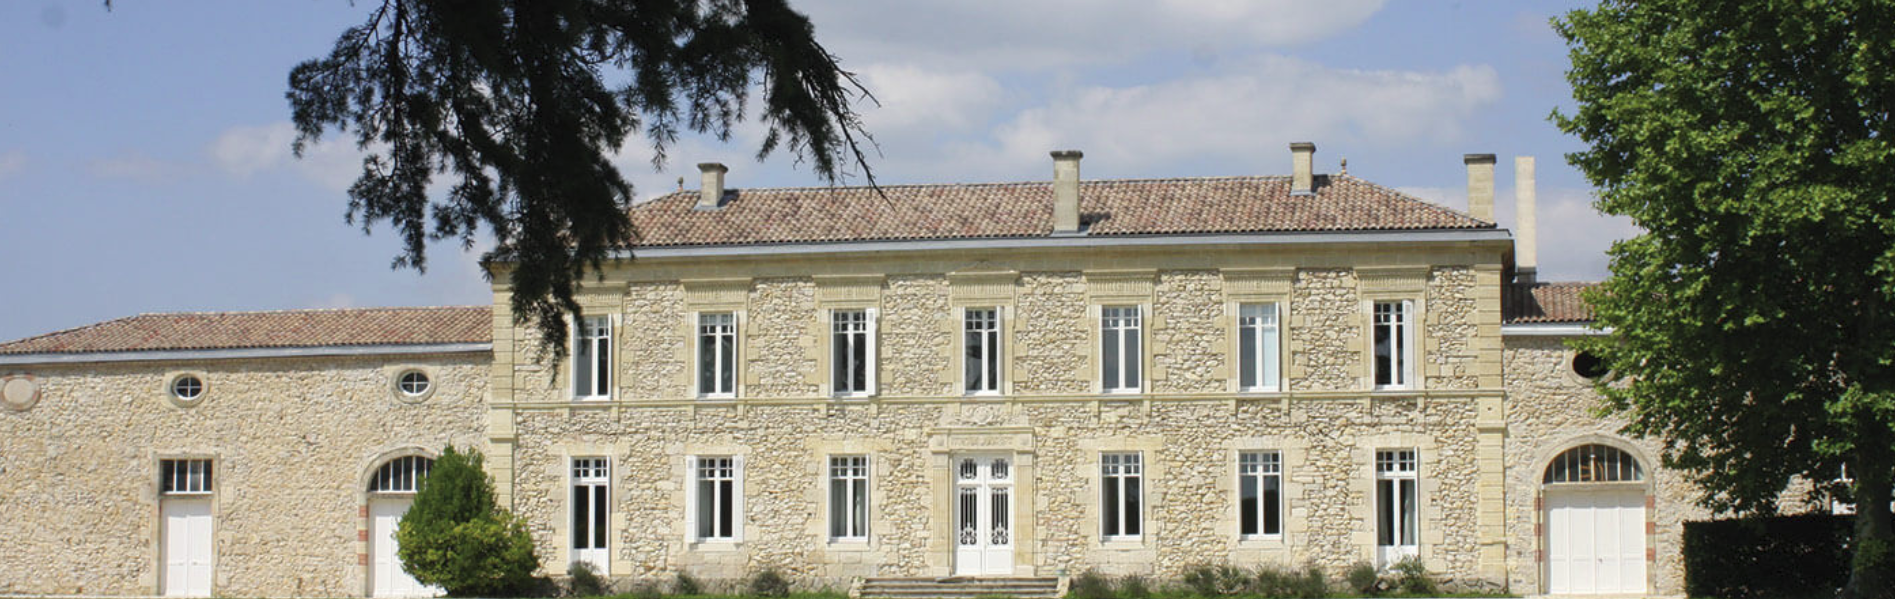 Chateau de Landiras Wine - Learn About & Buy Online | Rotweine